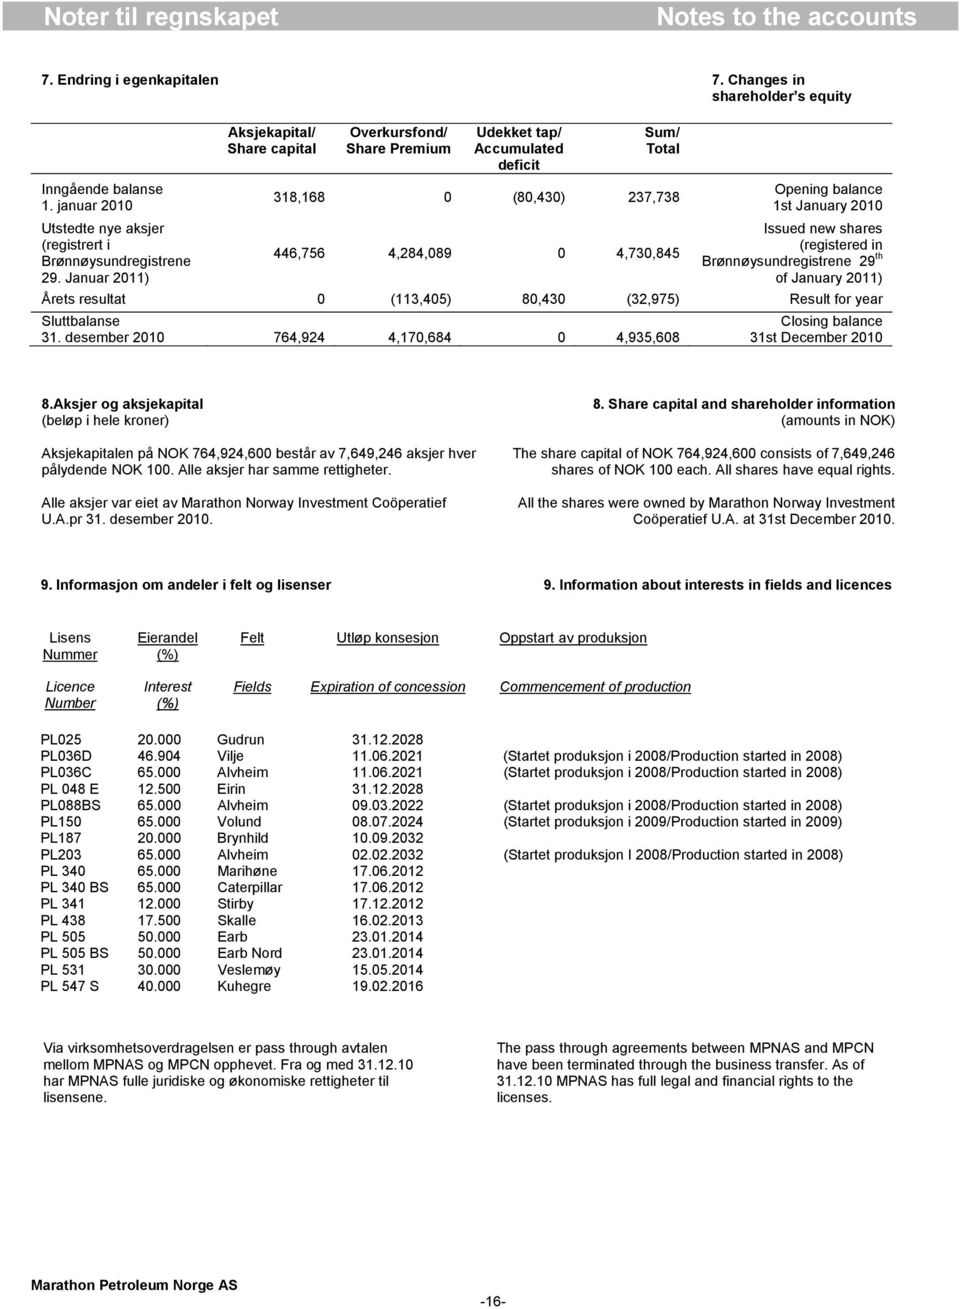 2010 Issued new shares (registered in Brønnøysundregistrene 29 th of January 2011) Årets resultat 0 (113,405) 80,430 (32,975) Result for year Sluttbalanse 31.